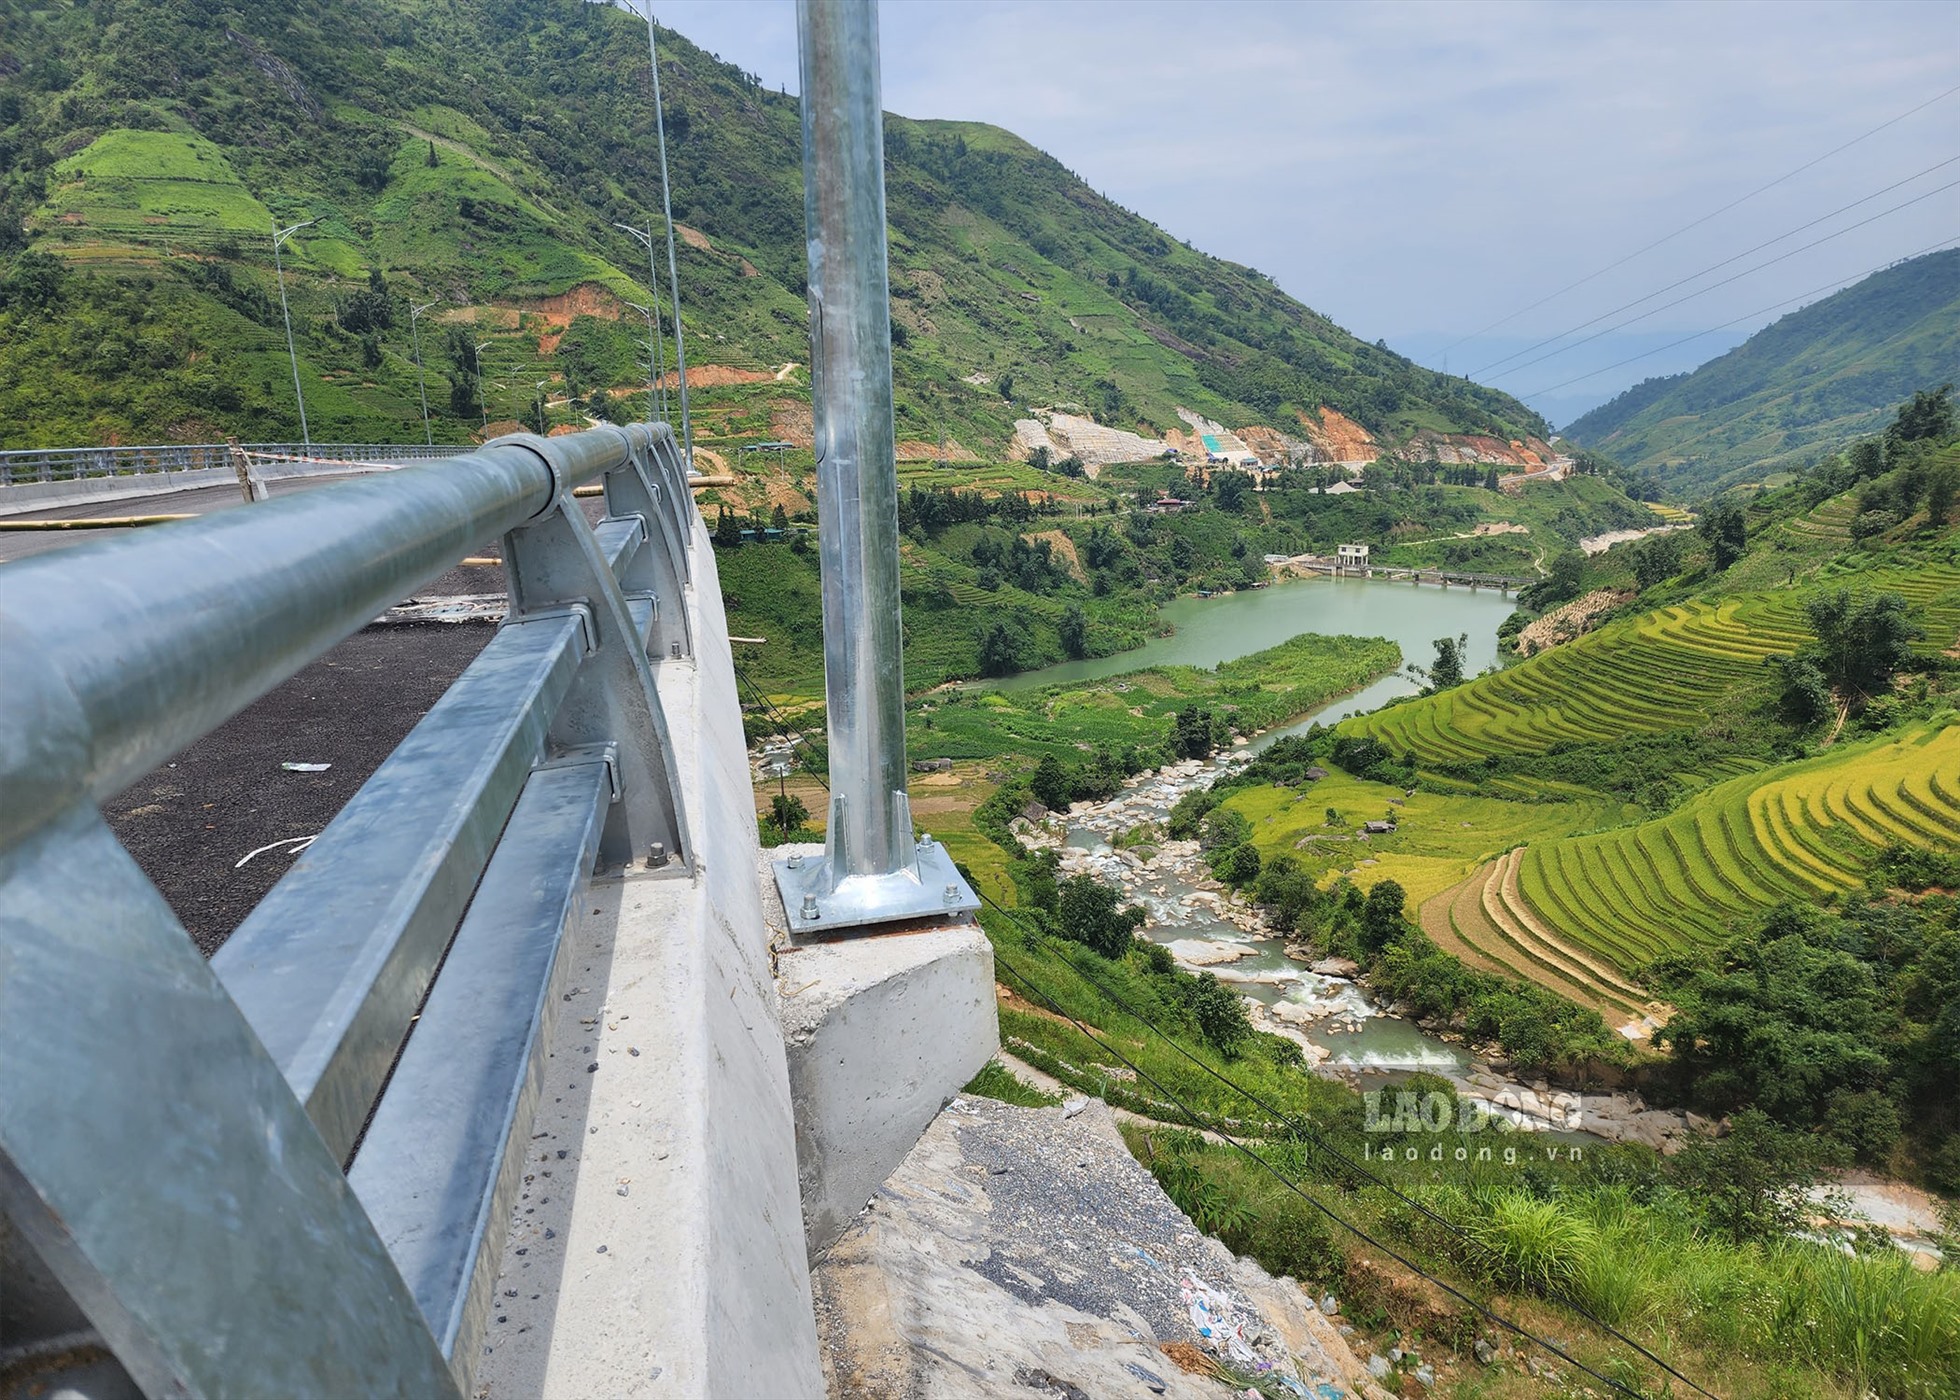 Cầu cạn Móng Sến vượt địa hình có chiều dài 612m, nối từ khu vực chân dốc lên đỉnh dốc ba tầng - đoạn đường khó đi, quanh co, nguy hiểm nhất trên cung đường từ thành phố Lào Cai lên thị xã Sa Pa.